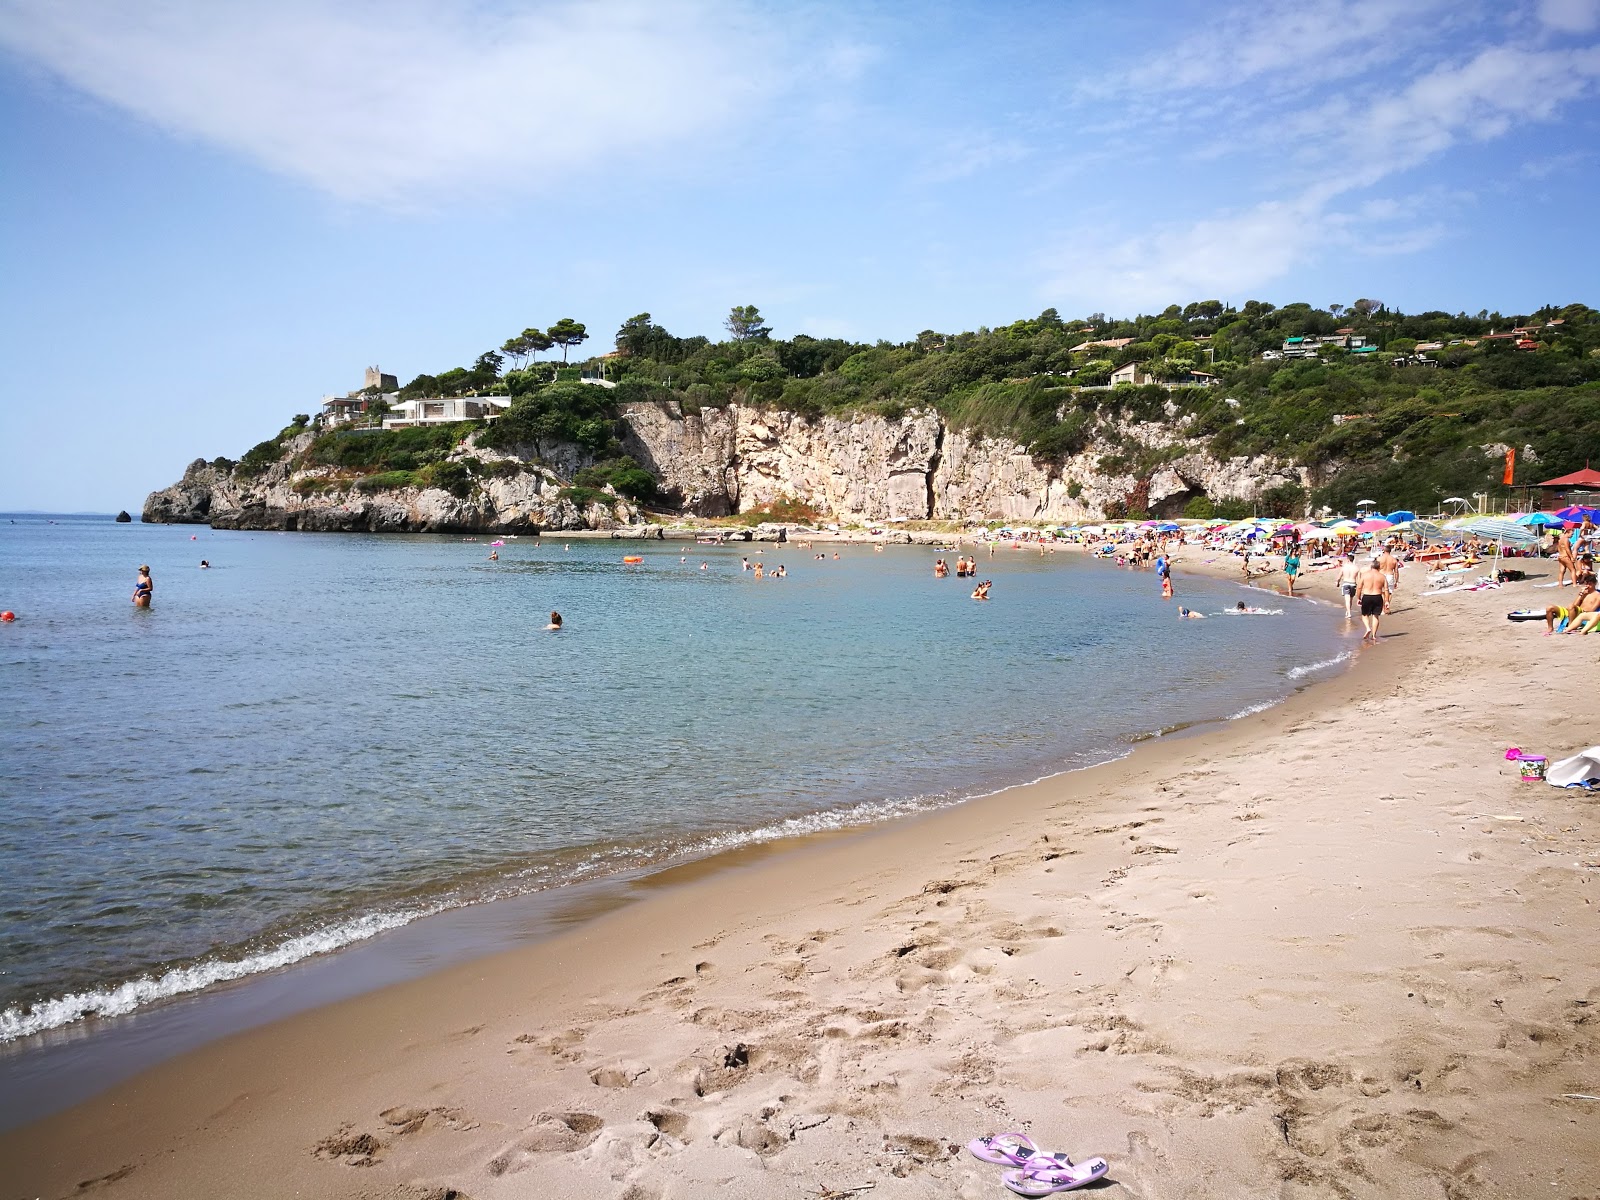 Fotografie cu Ansedonia beach cu o suprafață de nisip maro